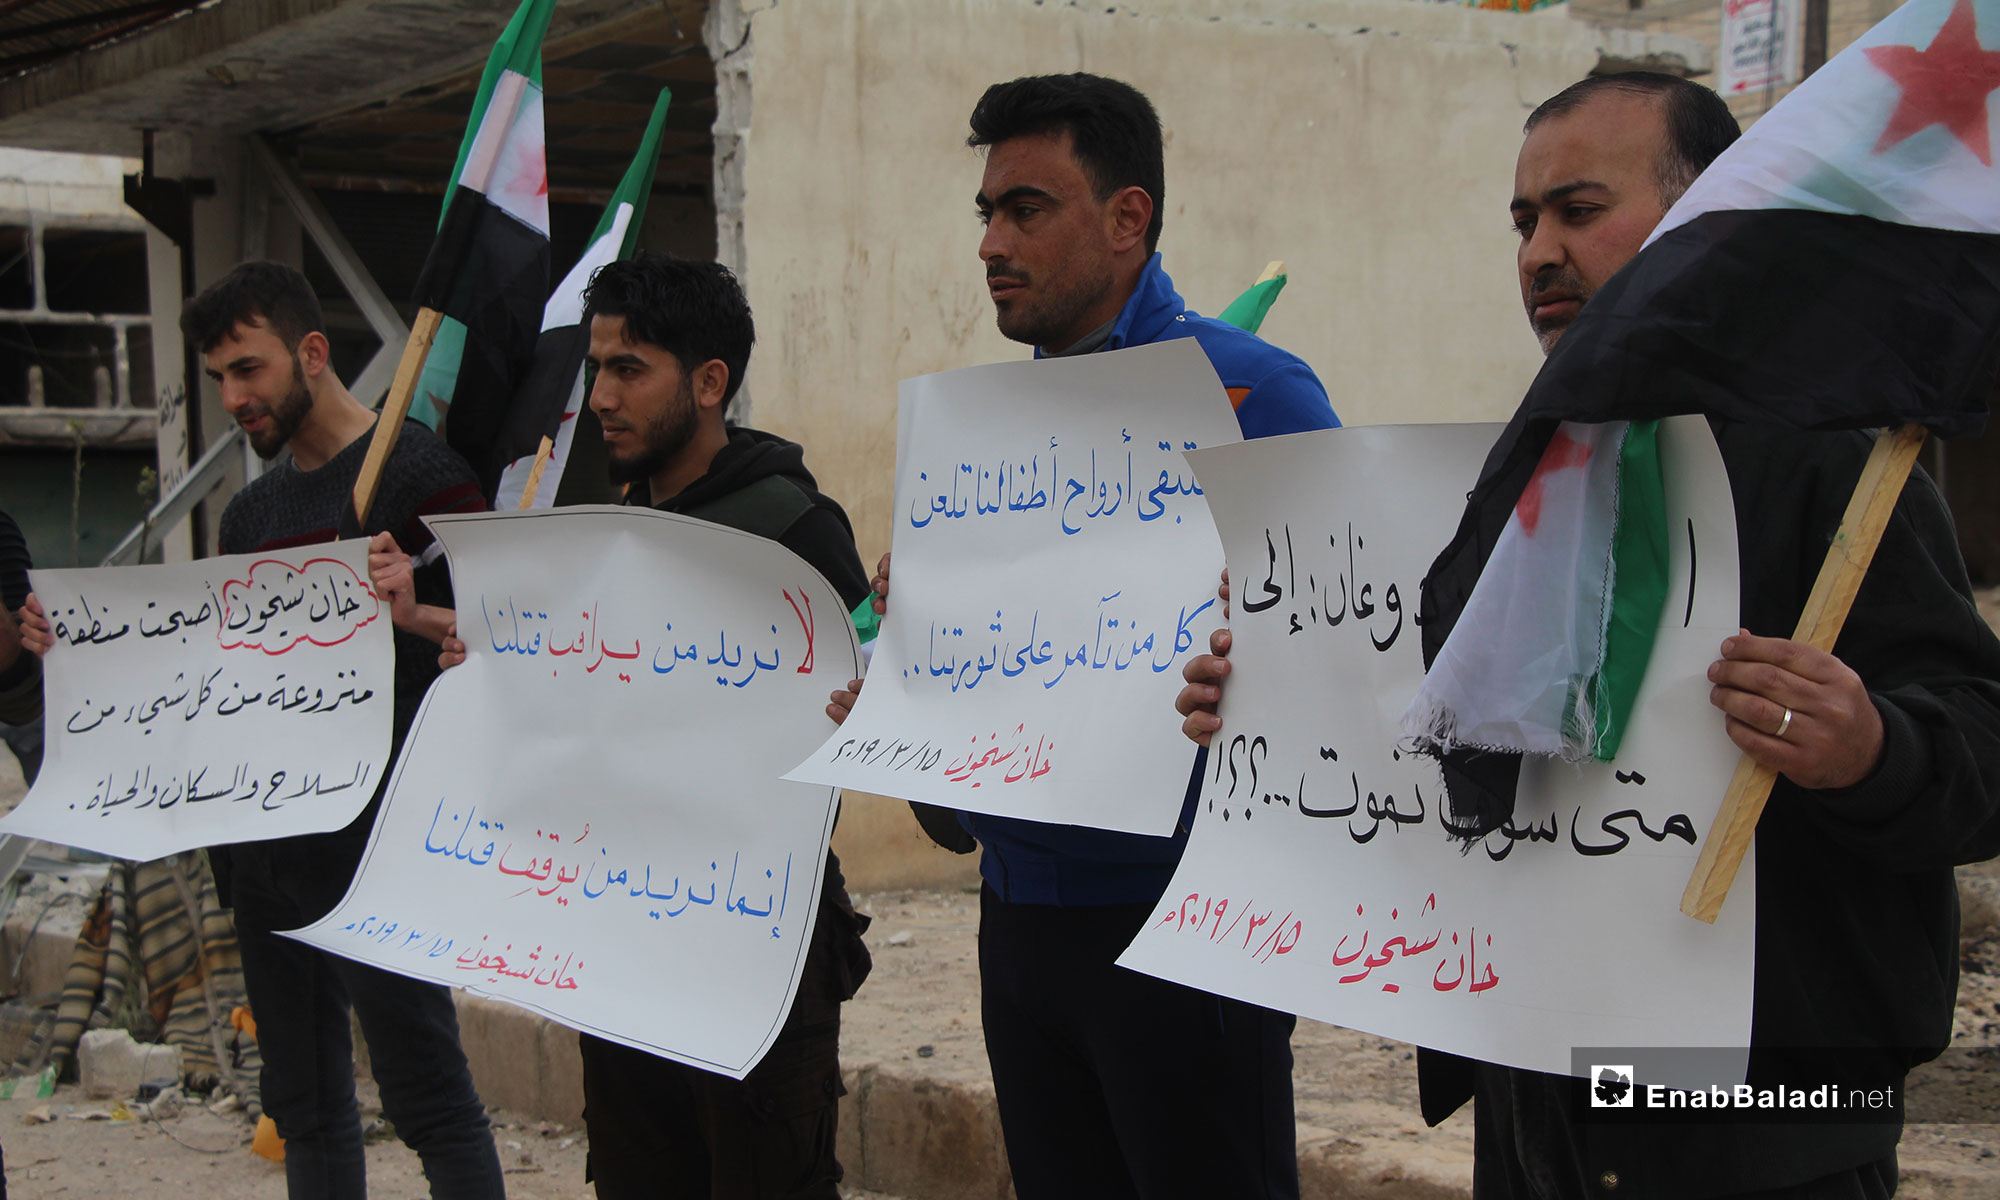 في الذكرى الثامنة للثورة السورية مظاهرة في خان شيخون بريف إدلب - 15 من آذار 2019 (عنب بلدي)